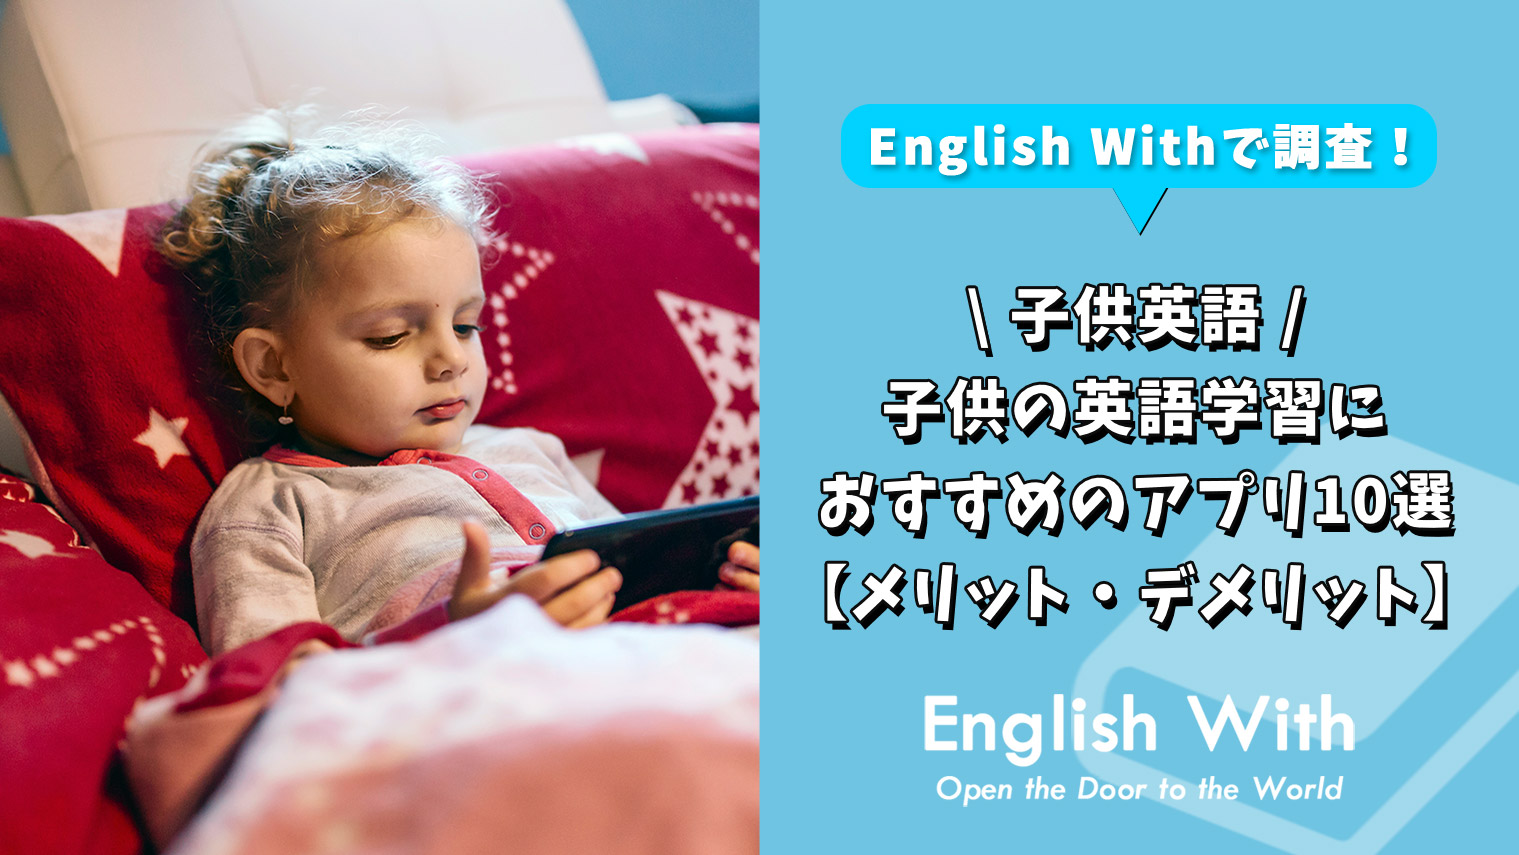 子供の英語学習におすすめのアプリ10選 メリット デメリット おすすめ英会話 英語学習の比較 ランキング English With